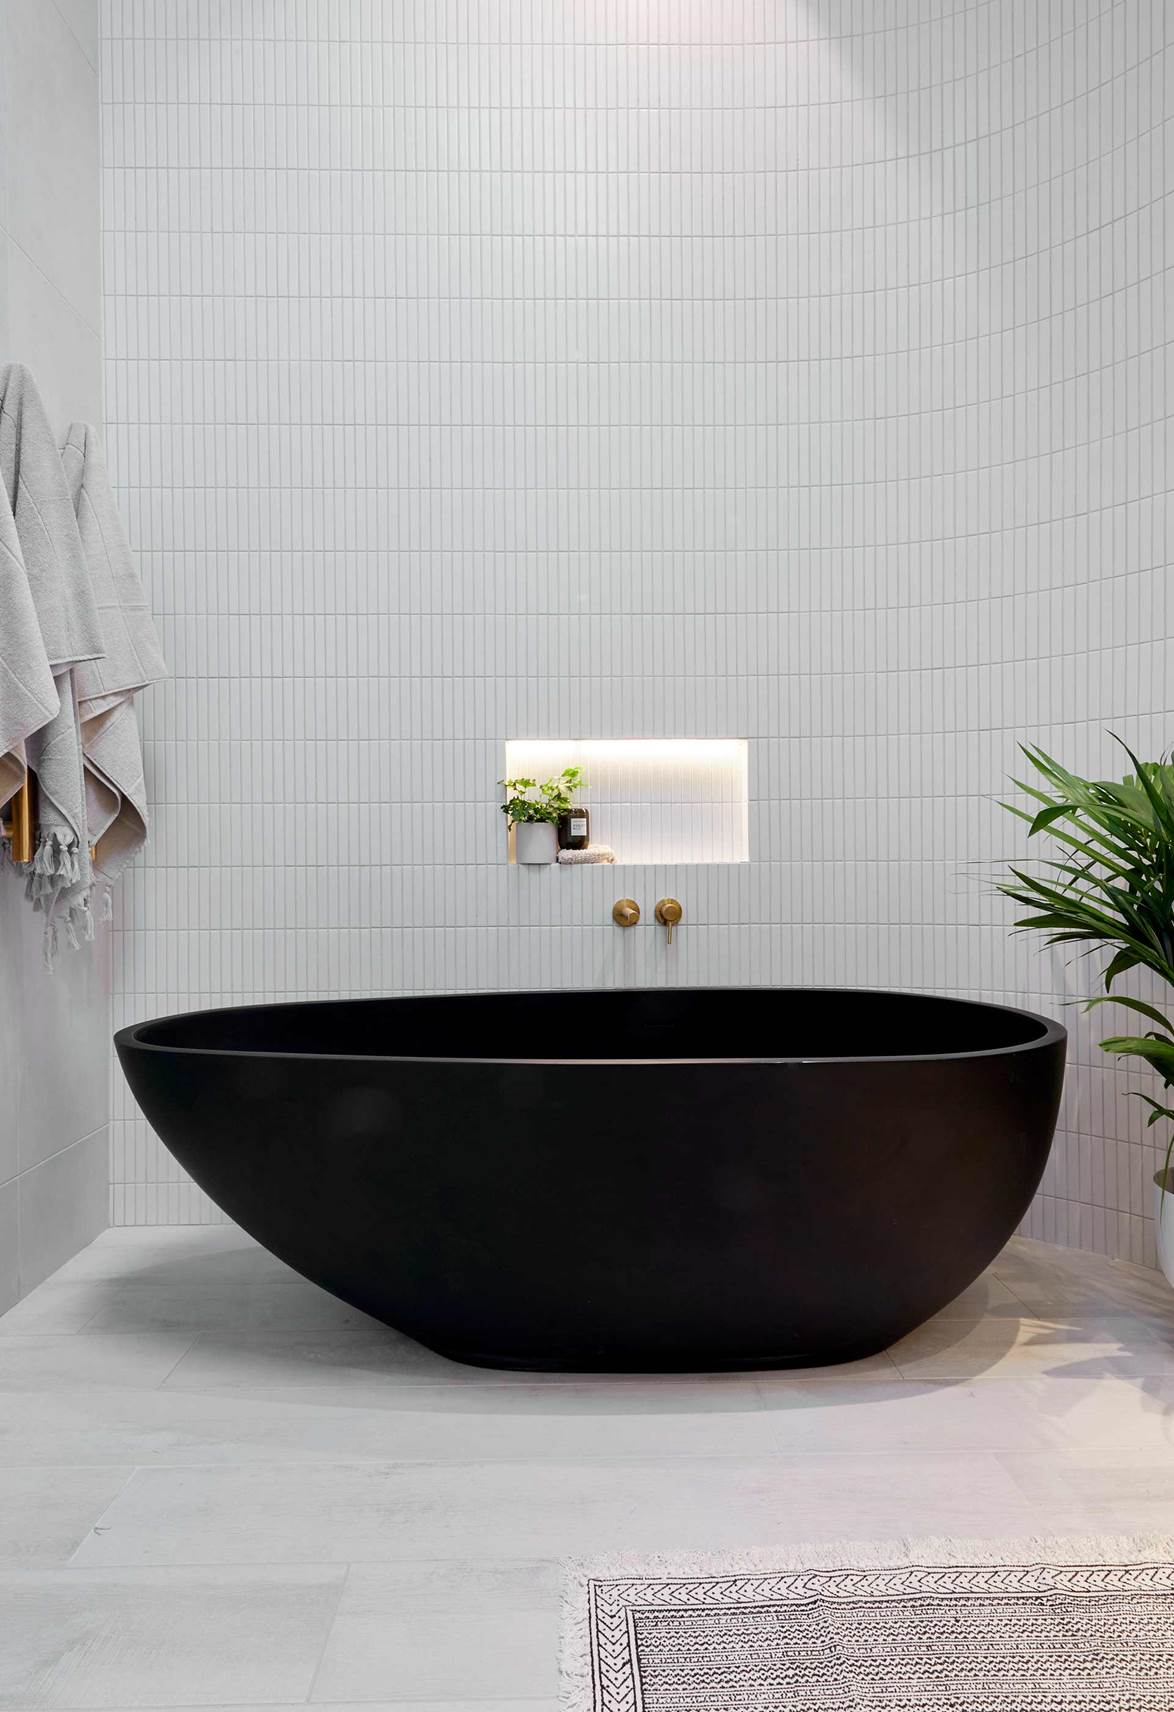 Tha hồ gom nhặt ý tưởng cho căn phòng tắm gia đình với những thiết kế đẹp miễn chê - Ảnh 6.